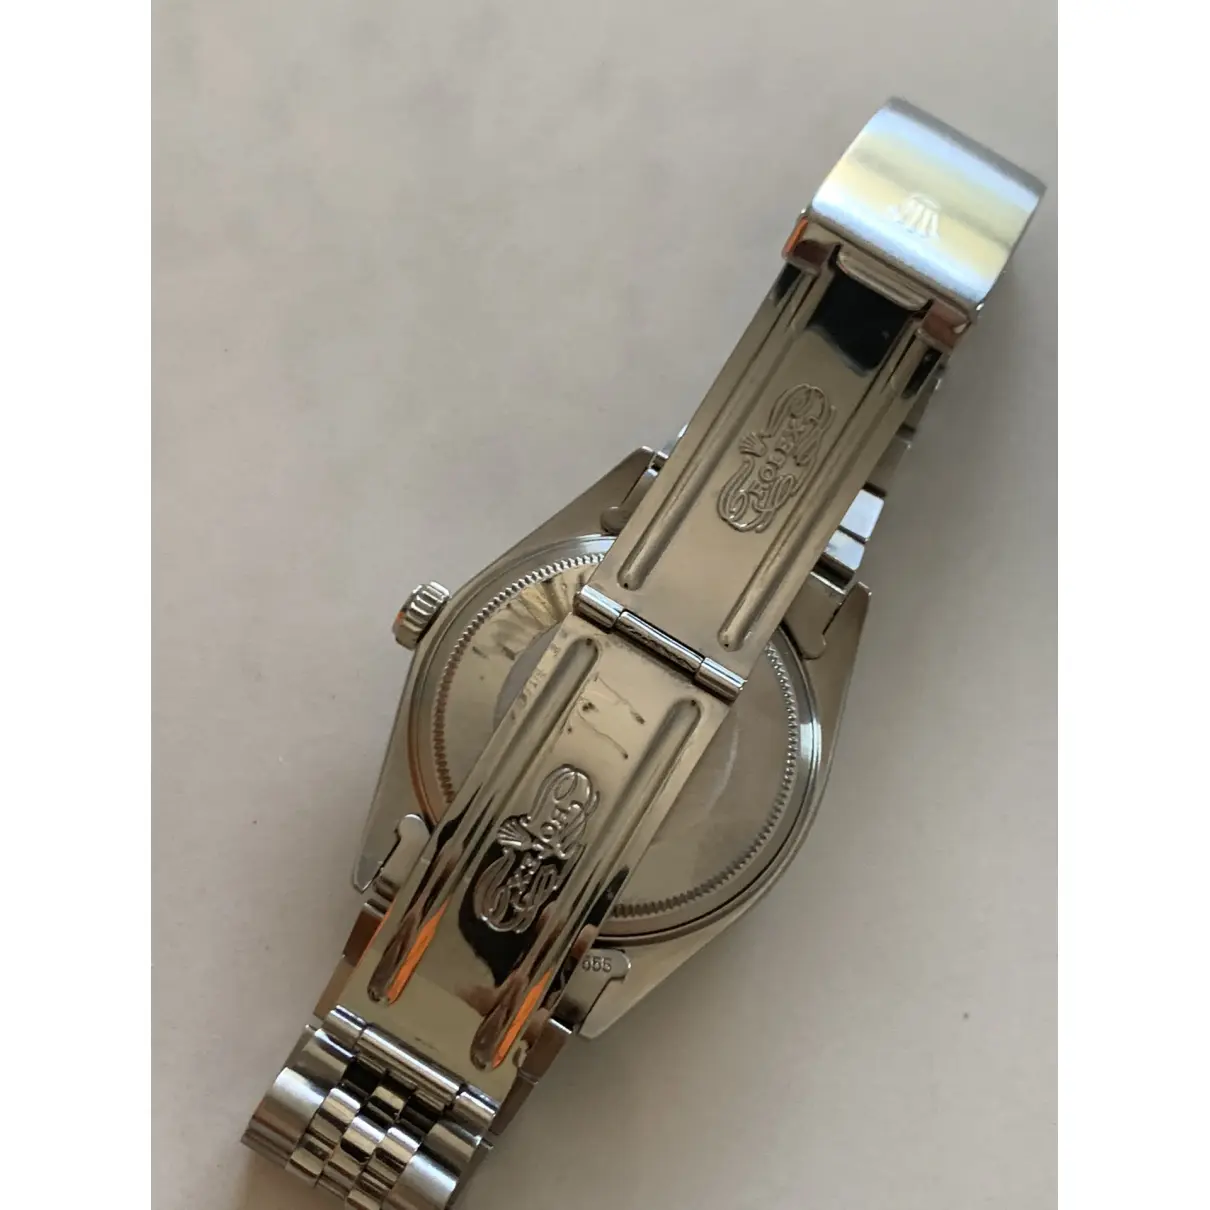 Datejust 36mm watch Rolex